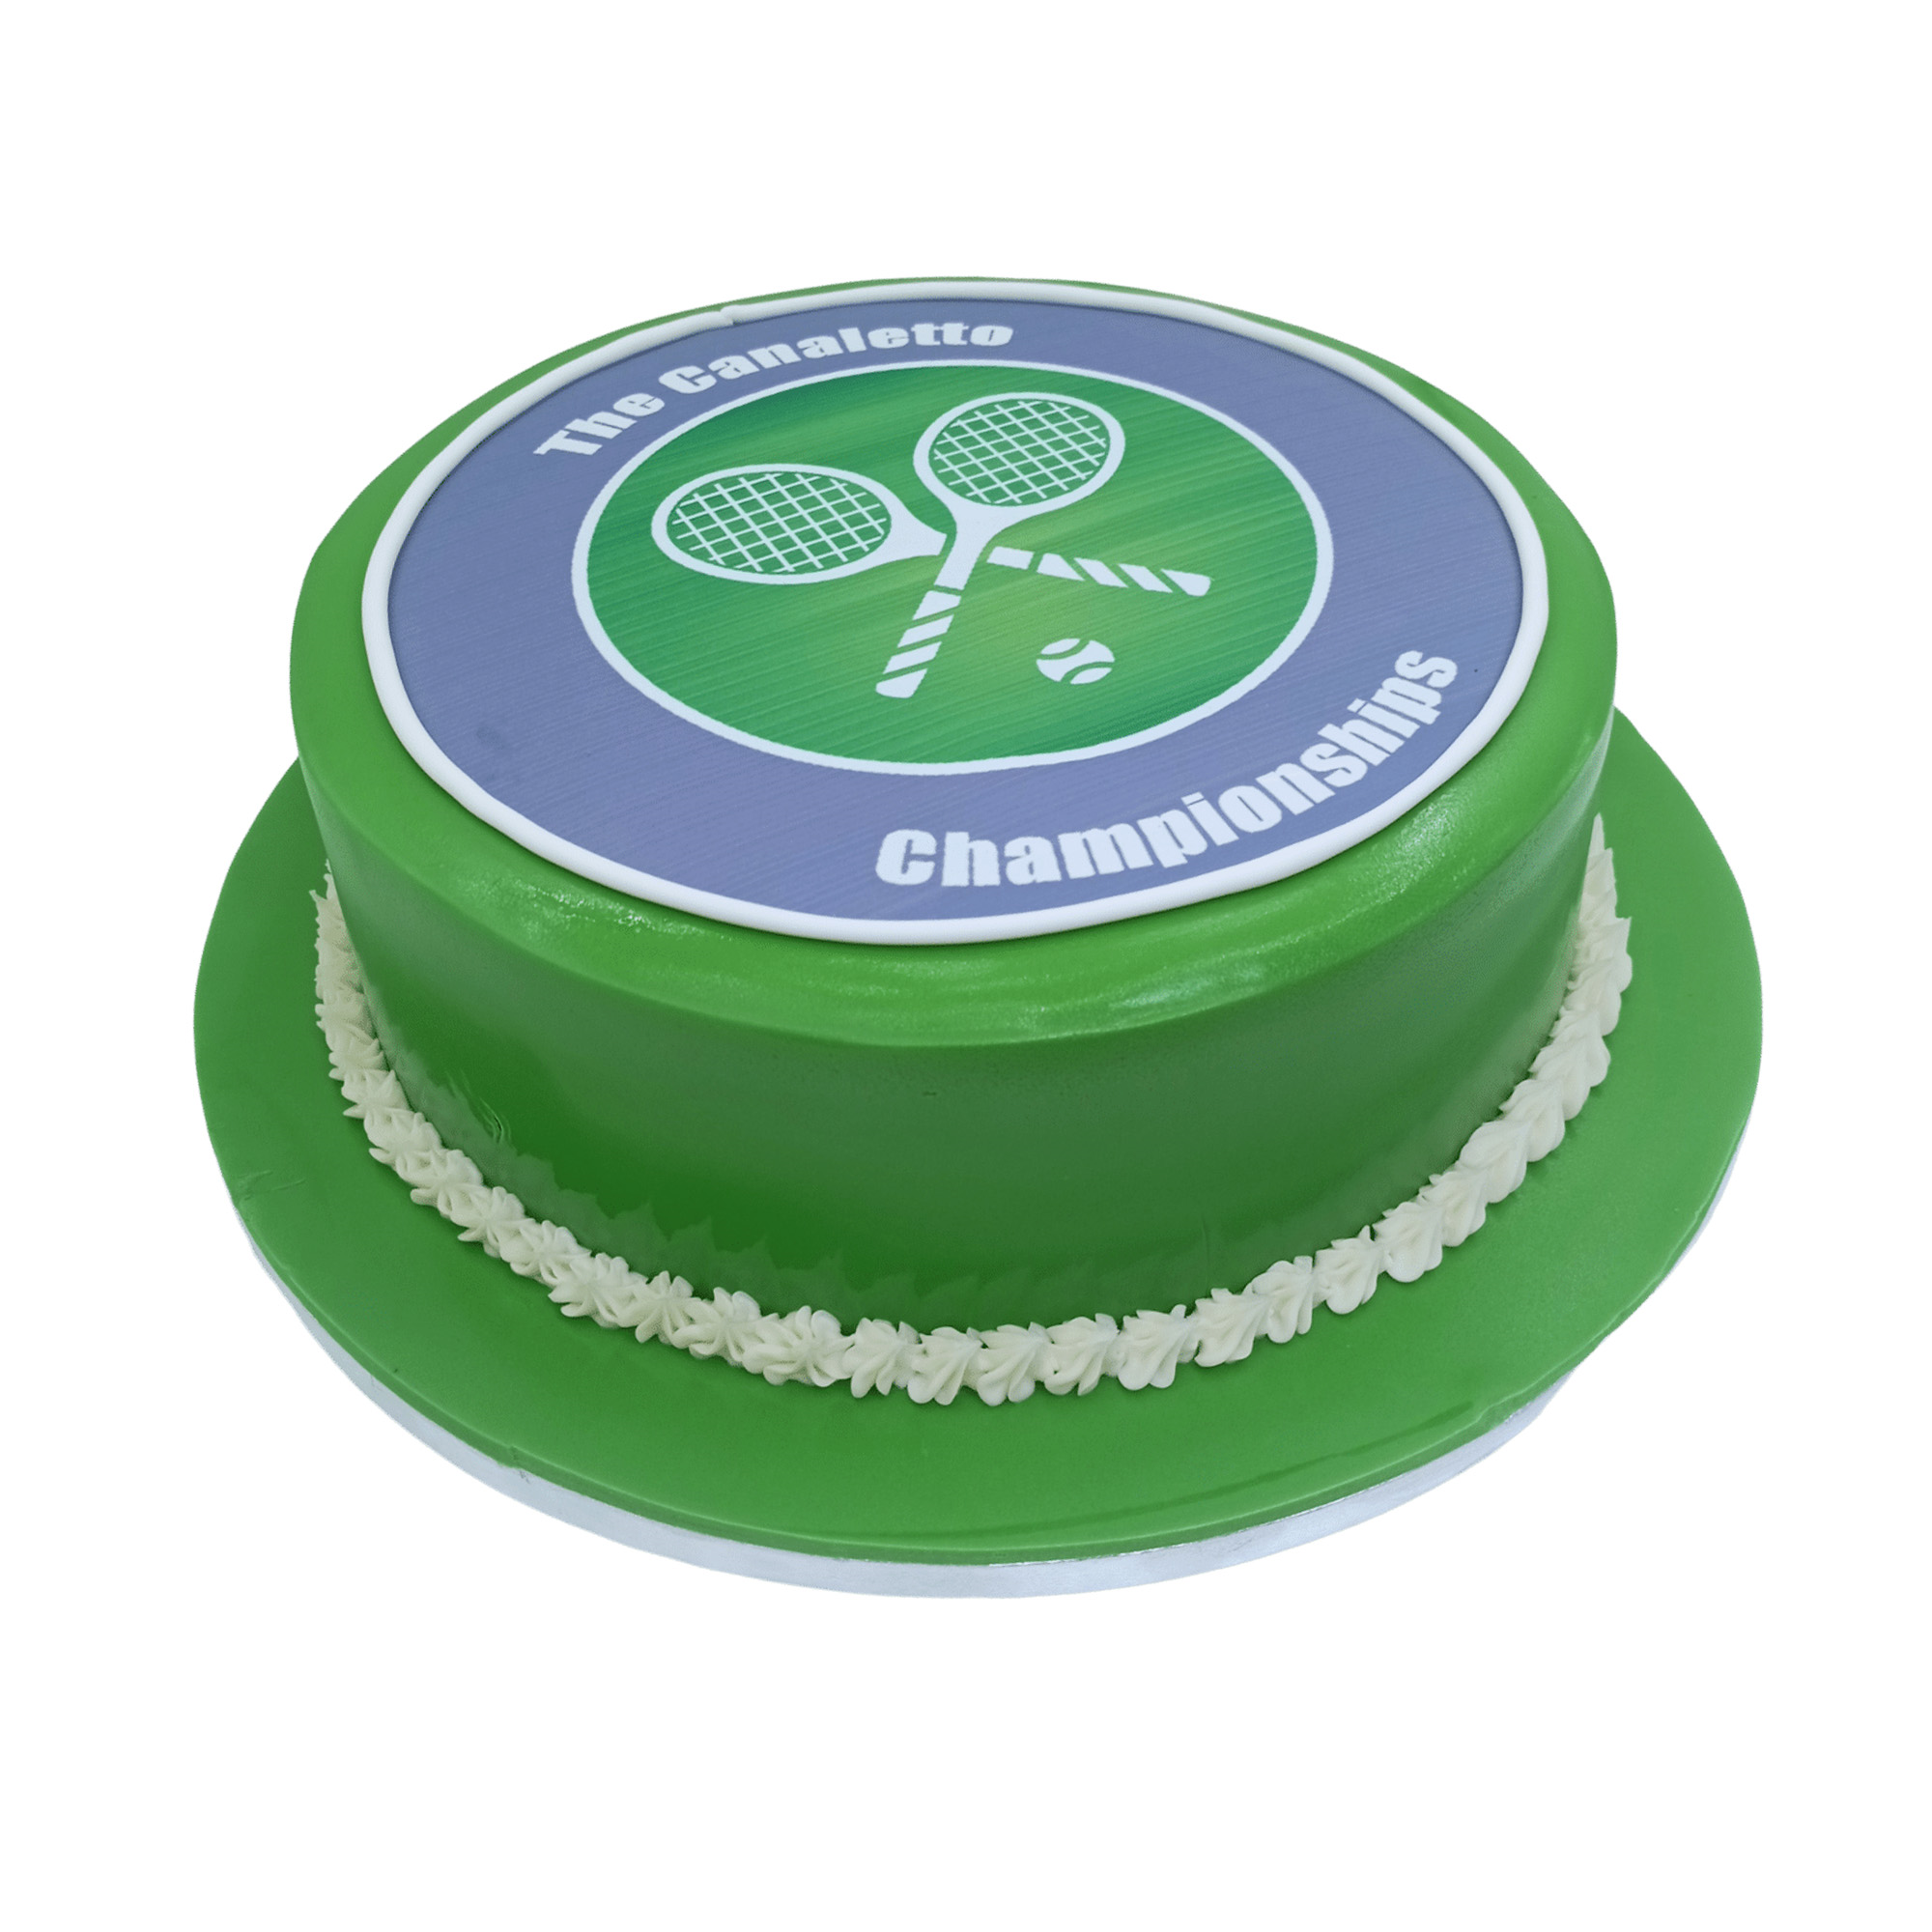 Wimbledon Tennis Theme Cake